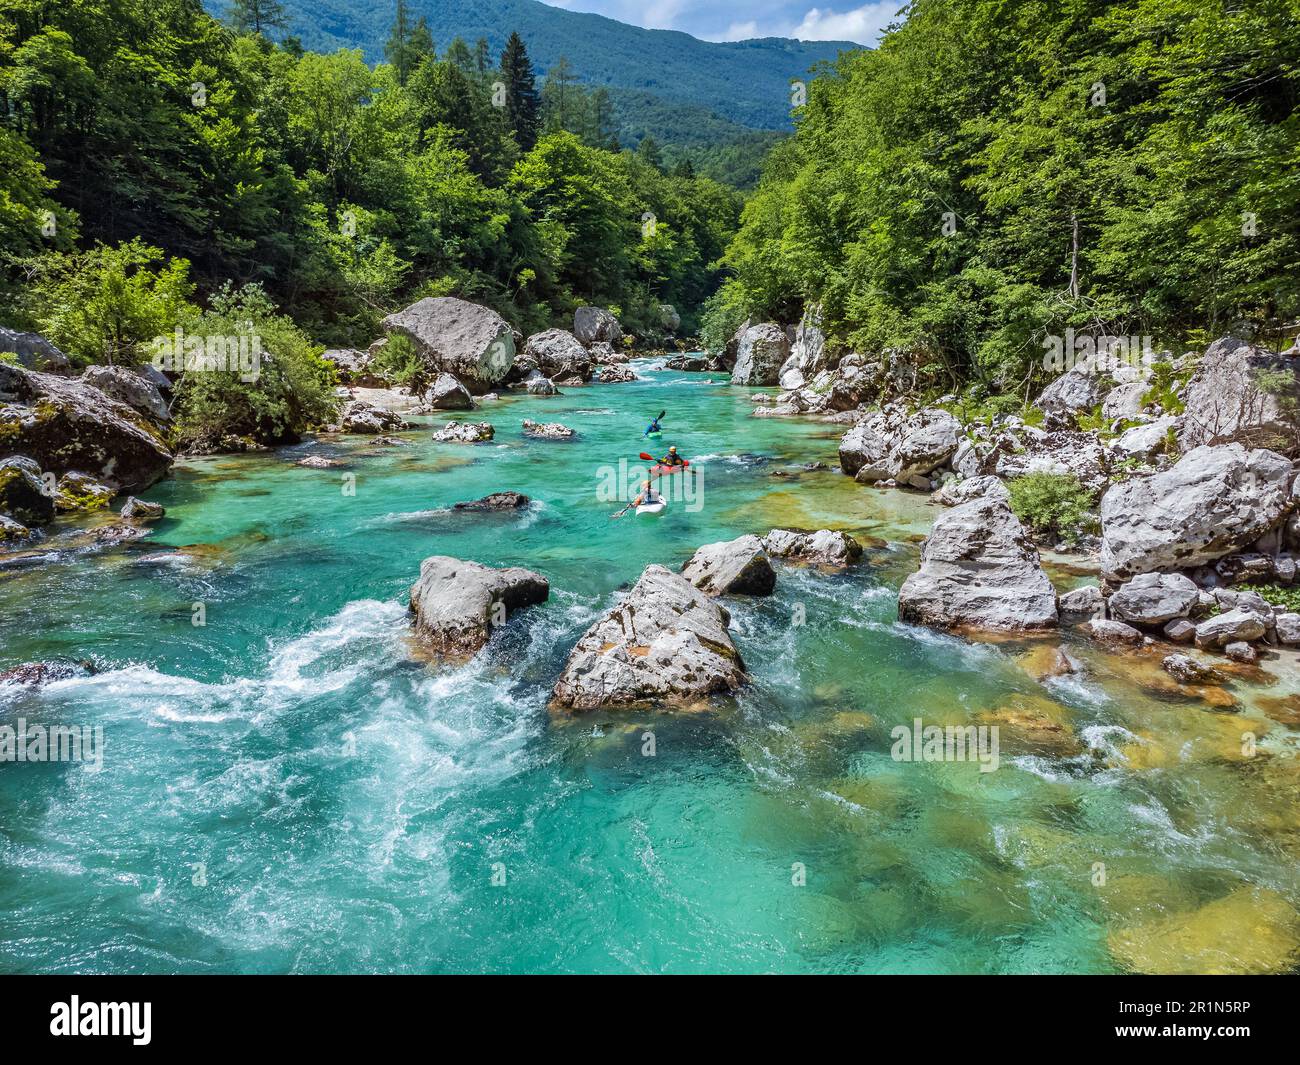 Valle Soca, Slovenia - veduta aerea del fiume alpino smeraldo Soca con barche da rafting che scendono lungo il fiume in una giornata estiva di sole Foto Stock